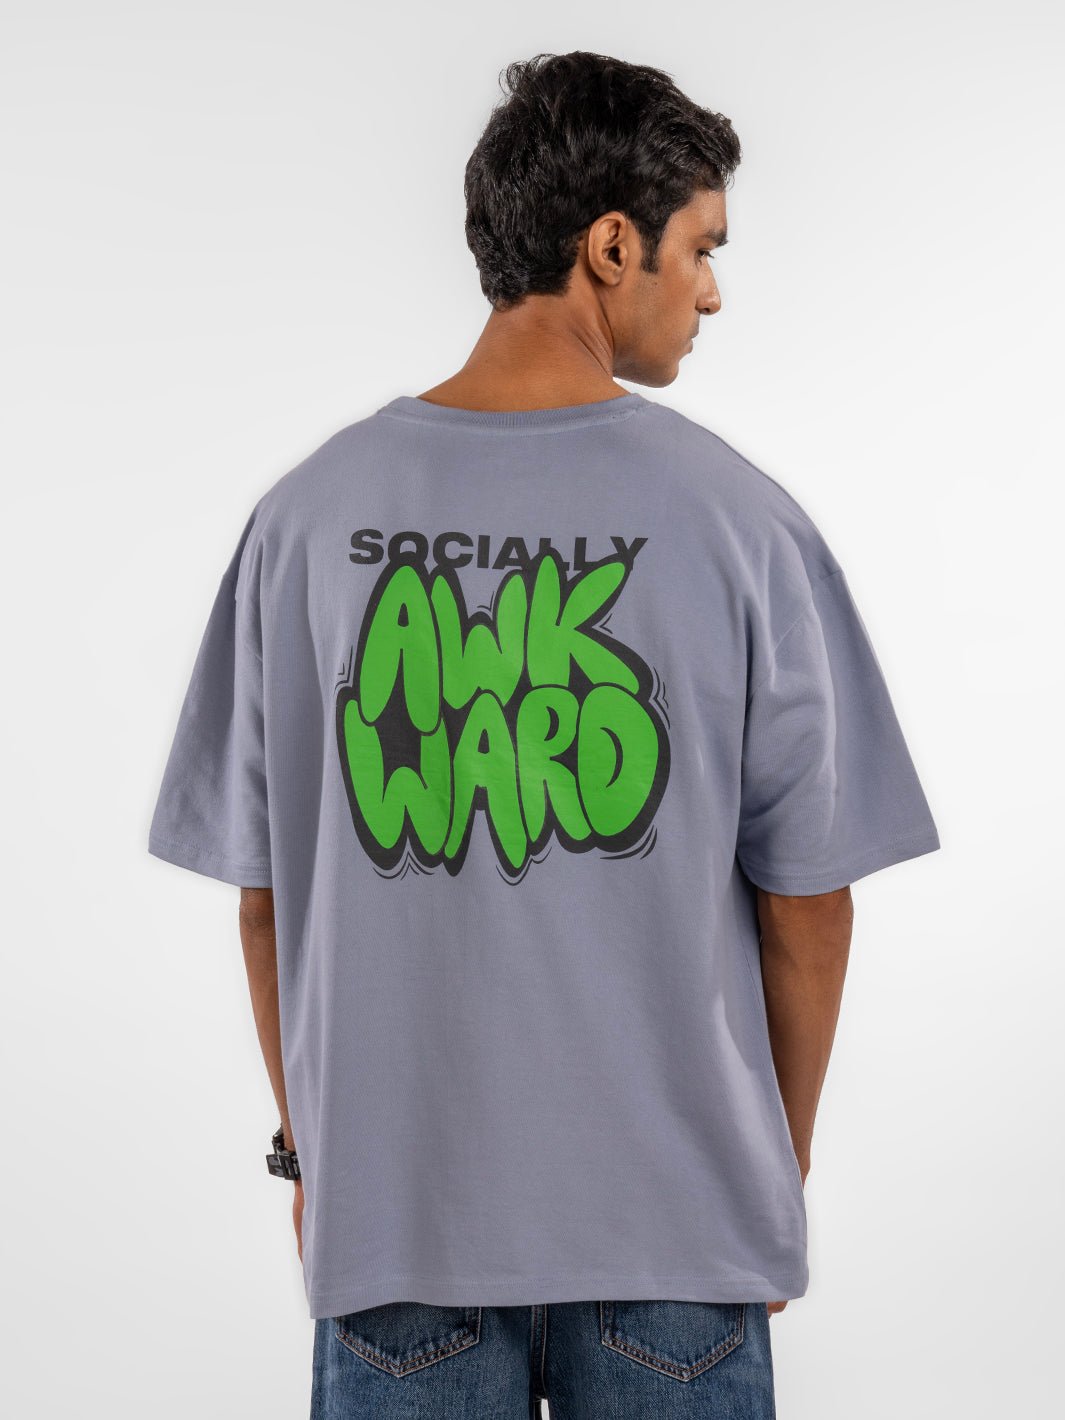 Socially awkward Eszett t-shirt view 1